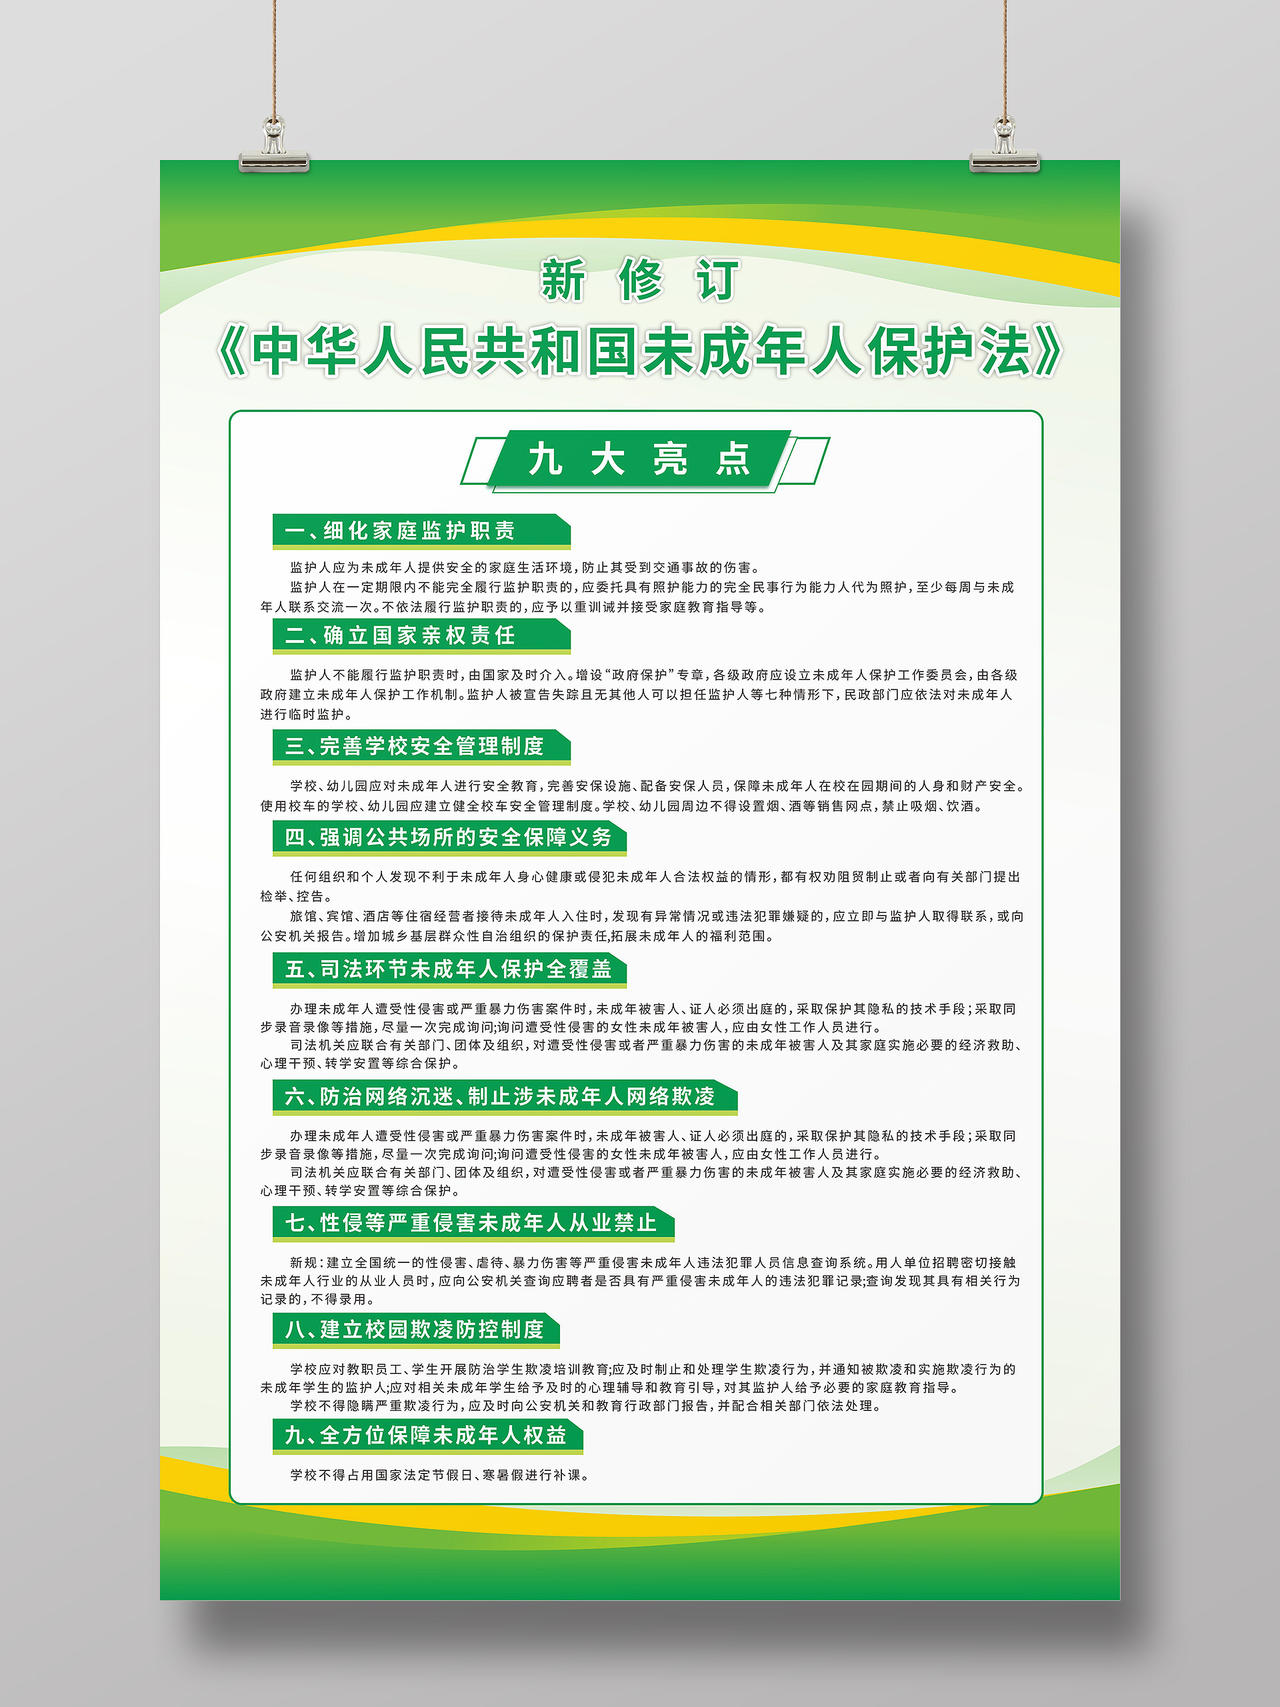 绿色渐变新修订未成年人保护法九大亮点宣传海报